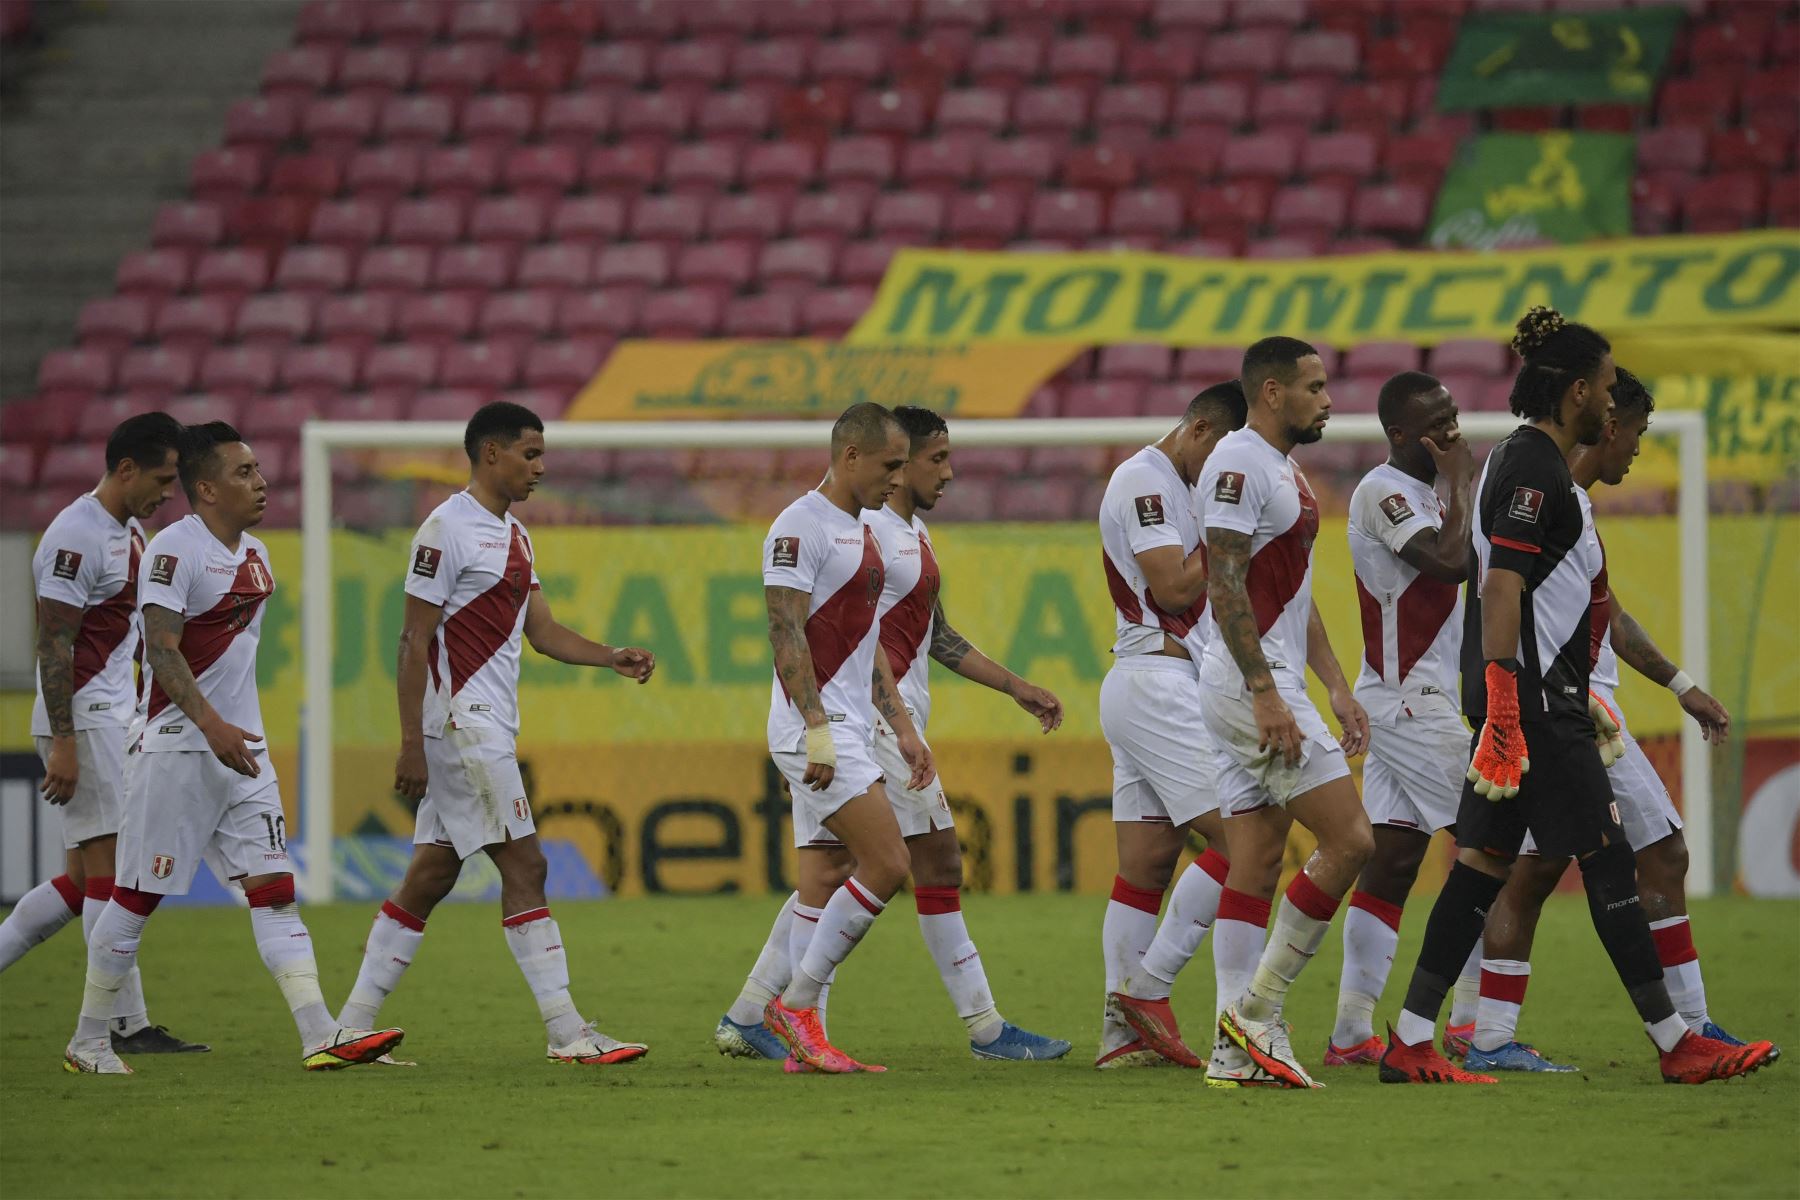 Los jugadores de Perú abandonan el campo en el descanso durante el partido de fútbol de clasificación sudamericano para la Copa Mundial de la FIFA Qatar 2022 contra Brasil en el Pernambuco Arena de Recife.
Foto: AFP